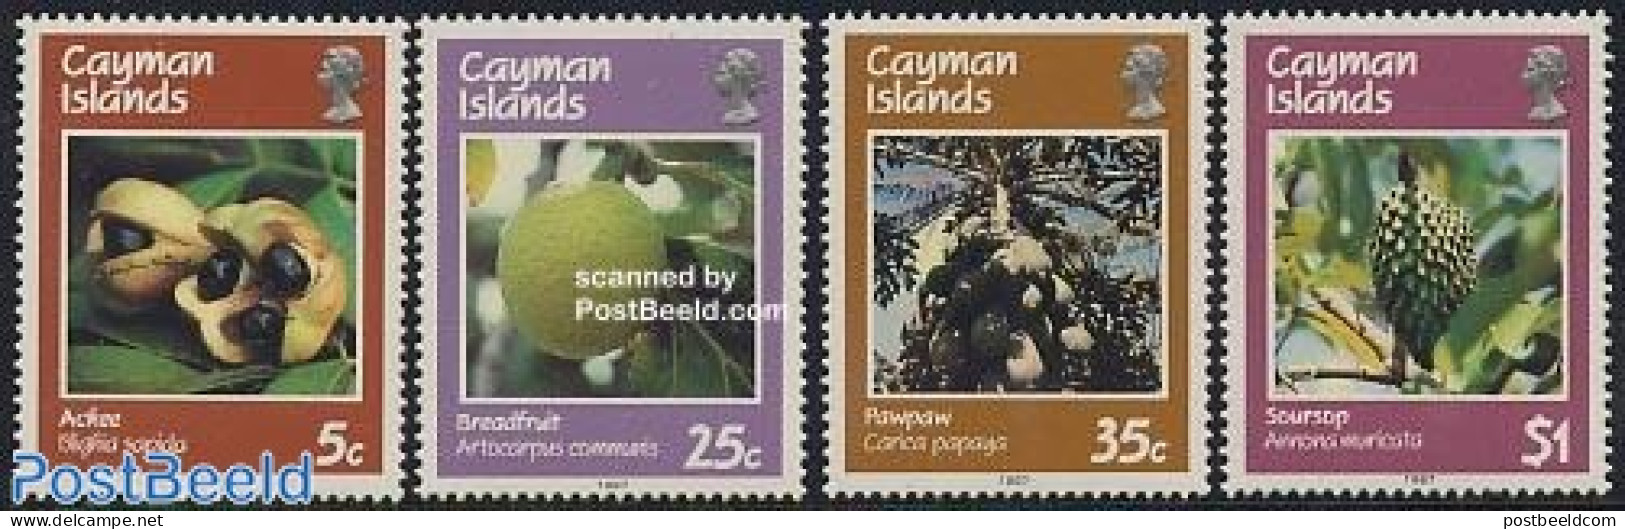 Cayman Islands 1987 Fruits 4v, Mint NH, Nature - Fruit - Fruit